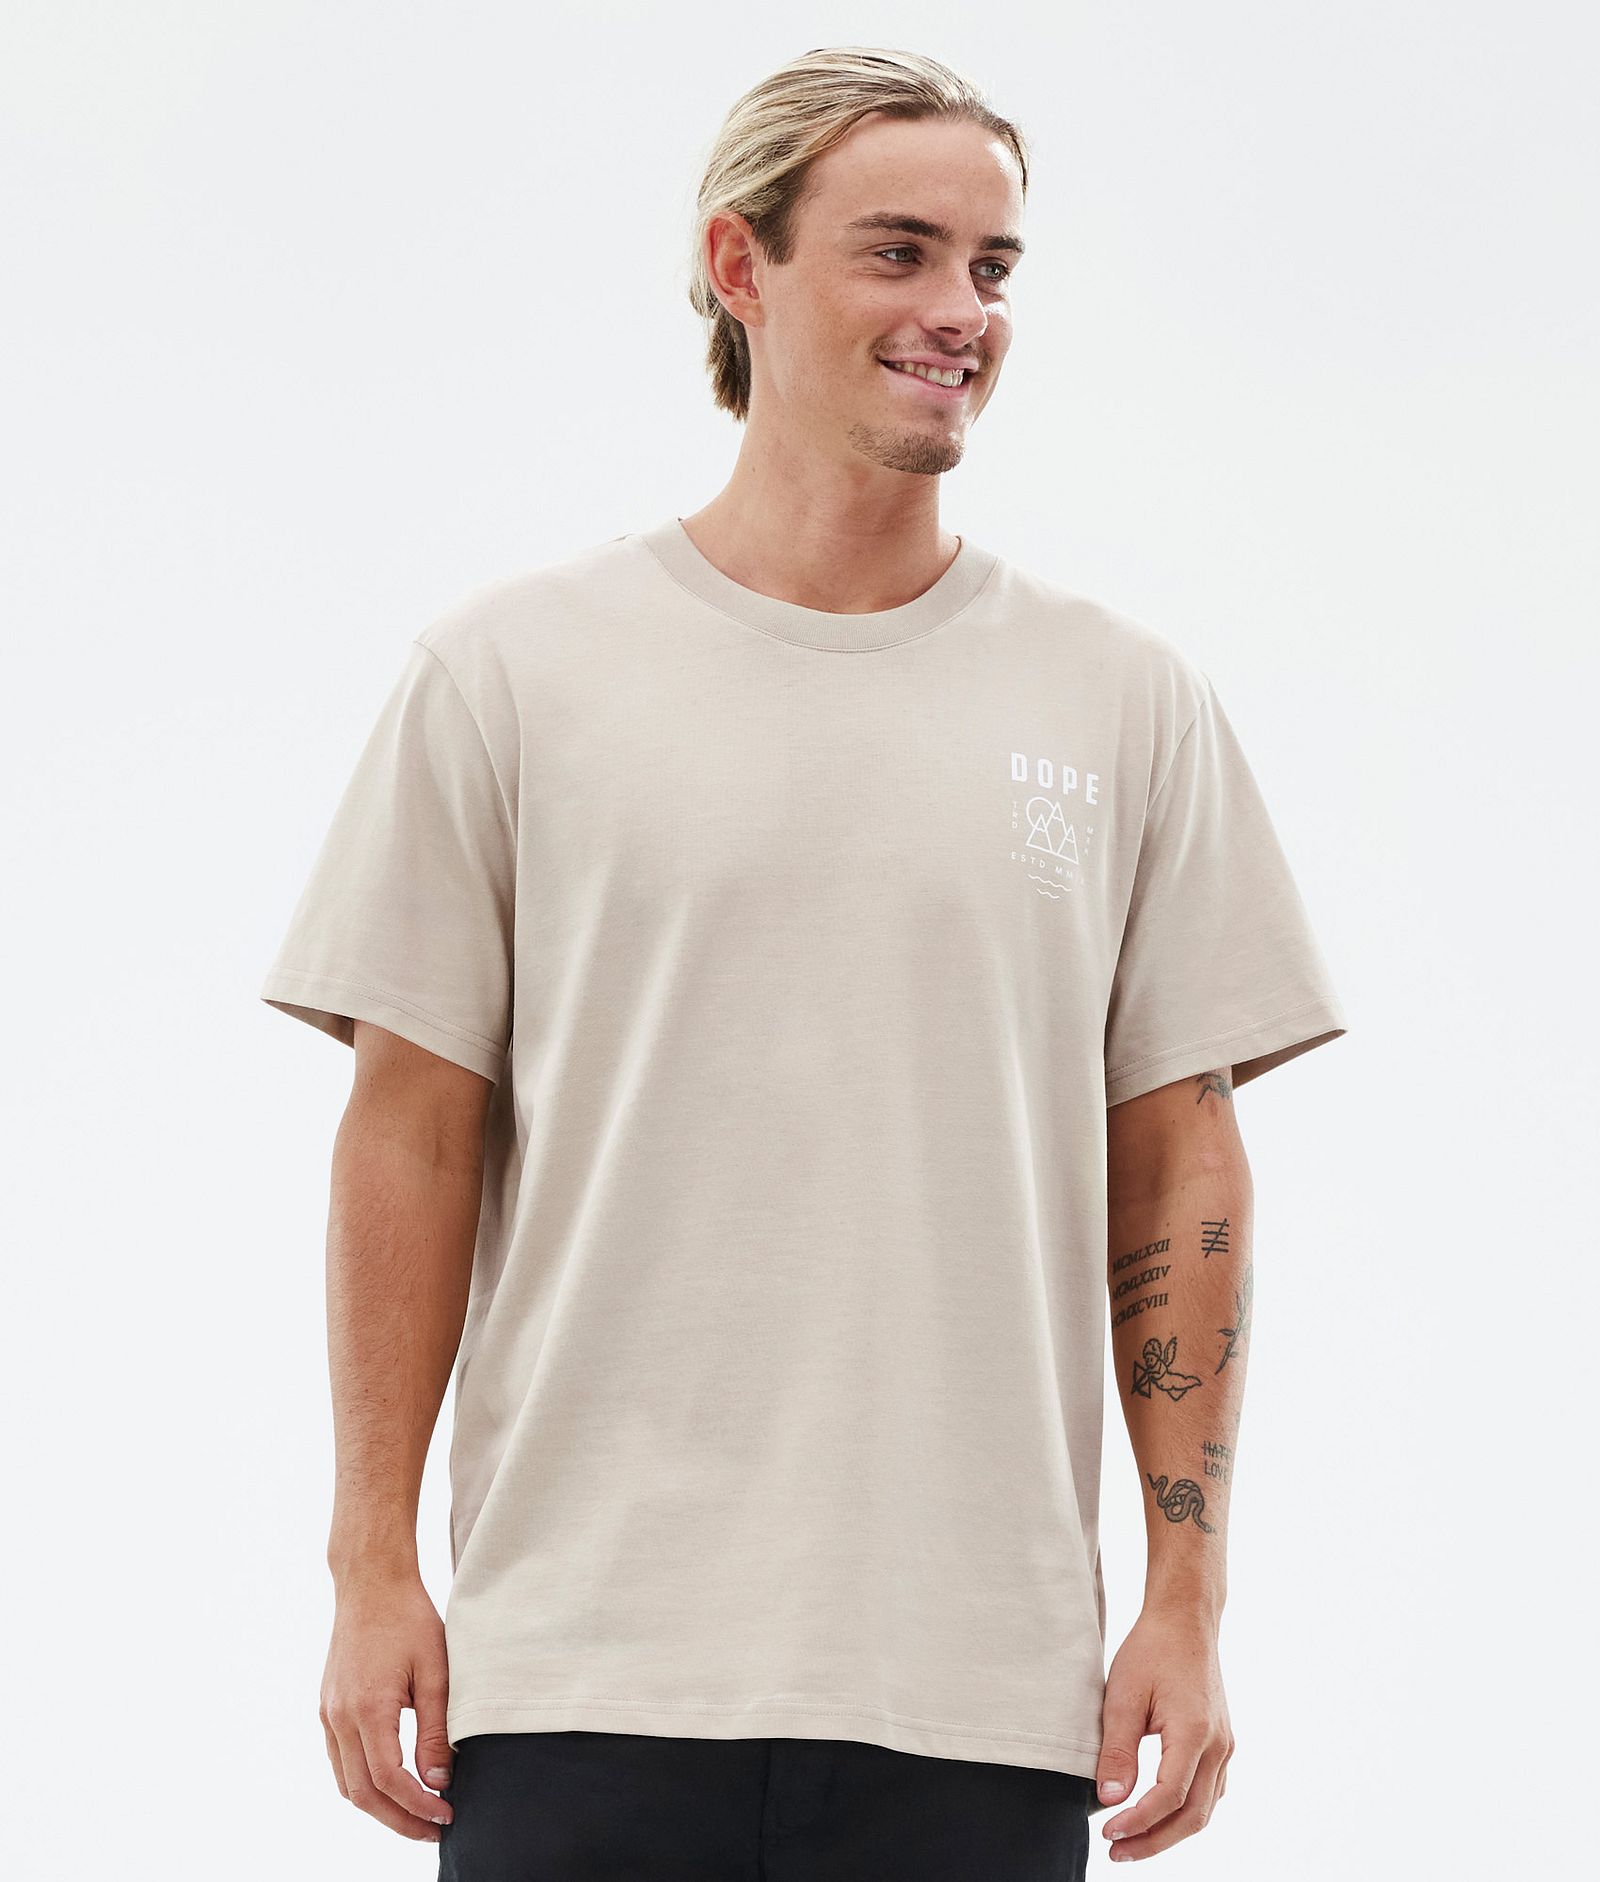 Dope Standard T-Shirt Herren Summit Sand